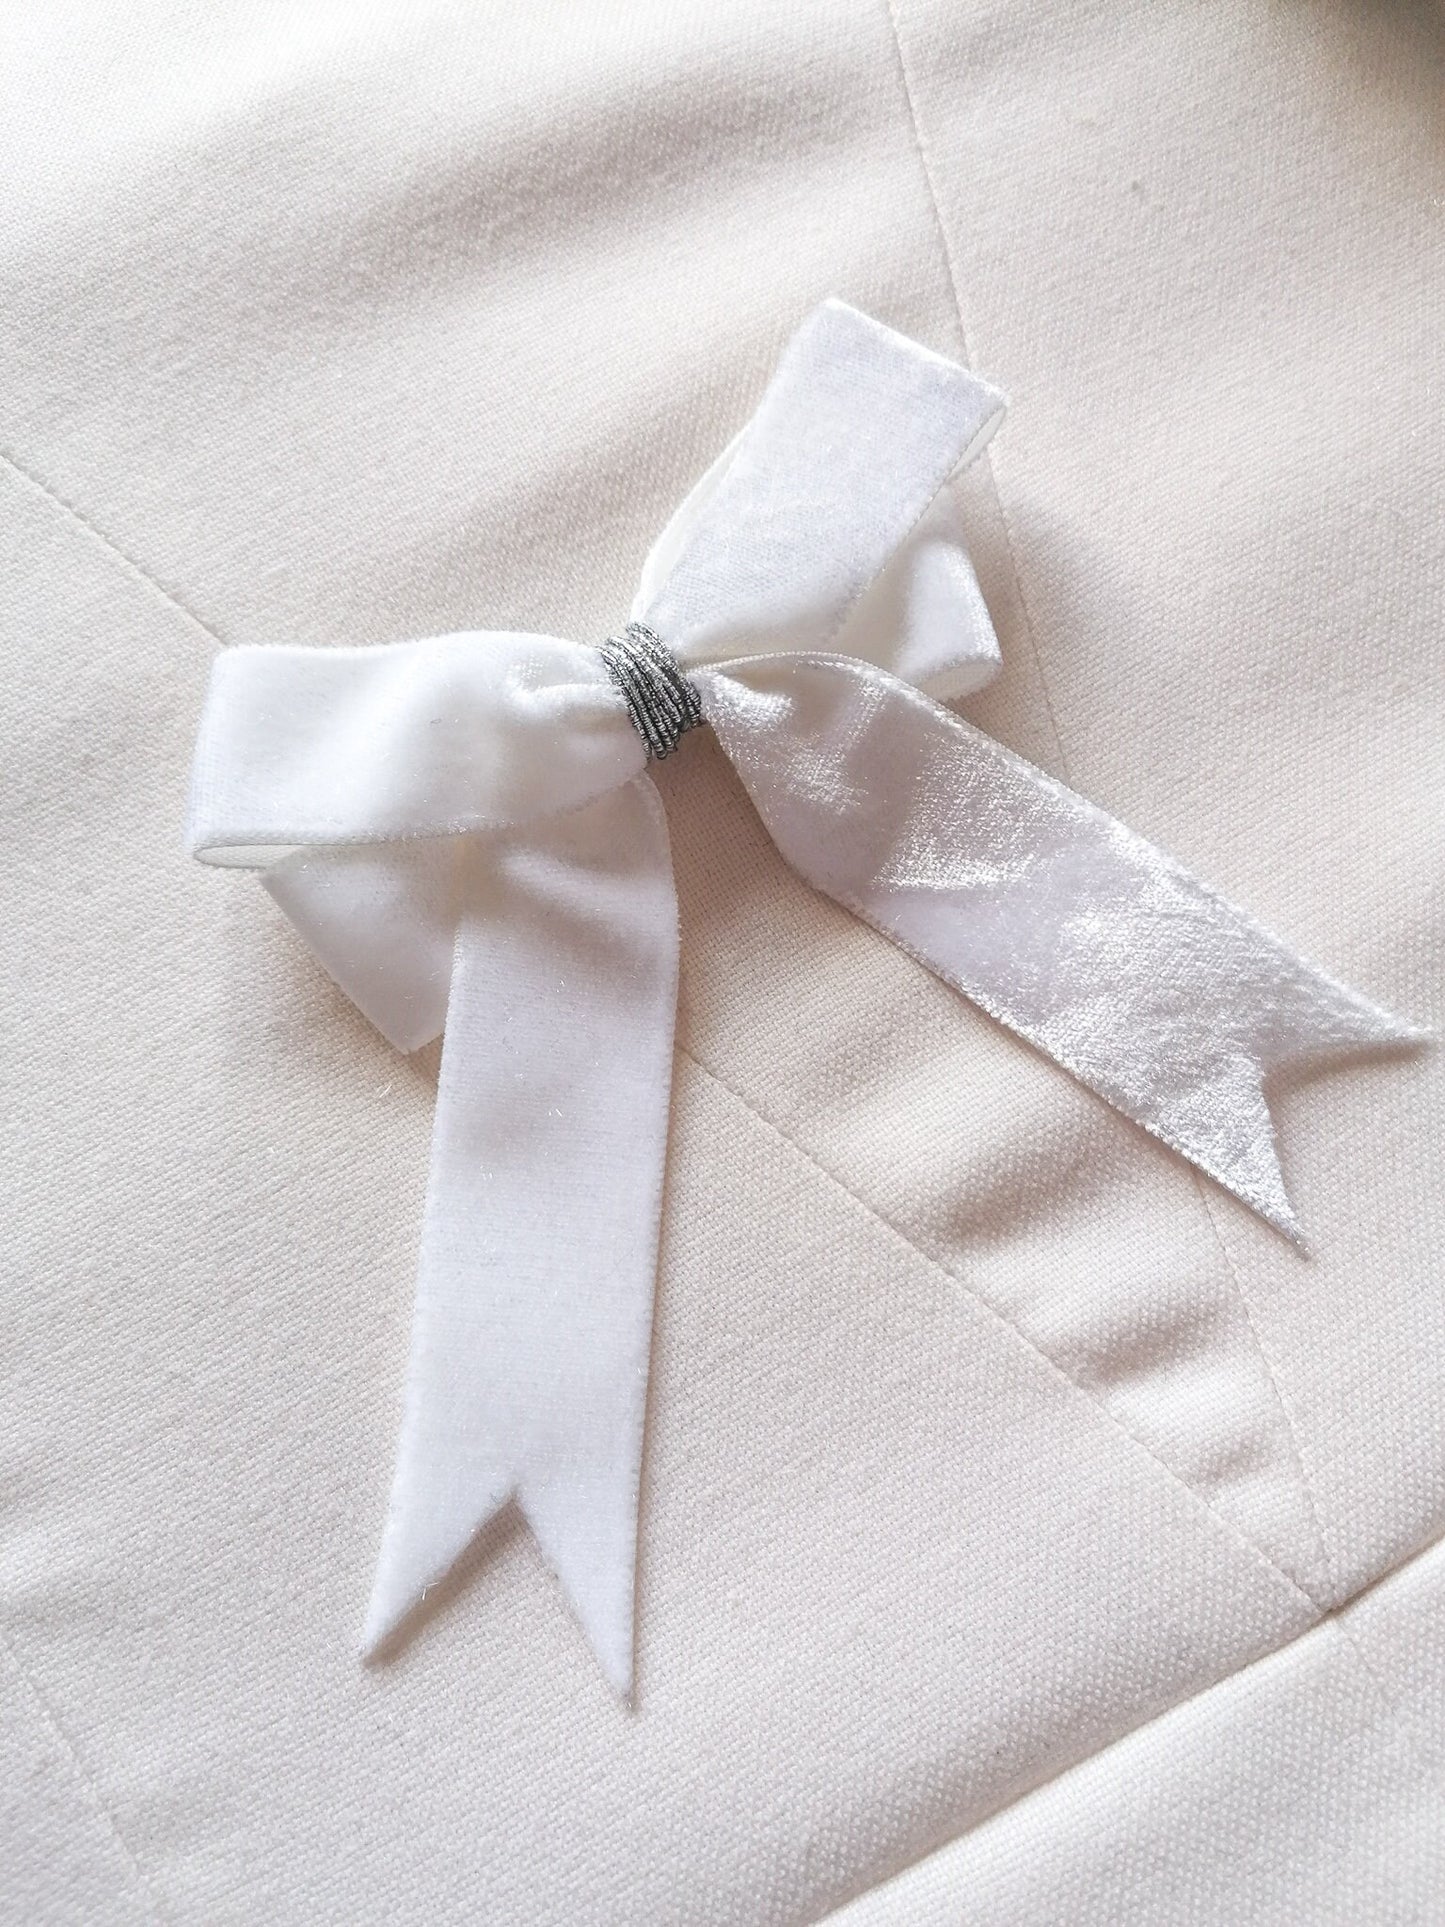 White velvet bow ornaments